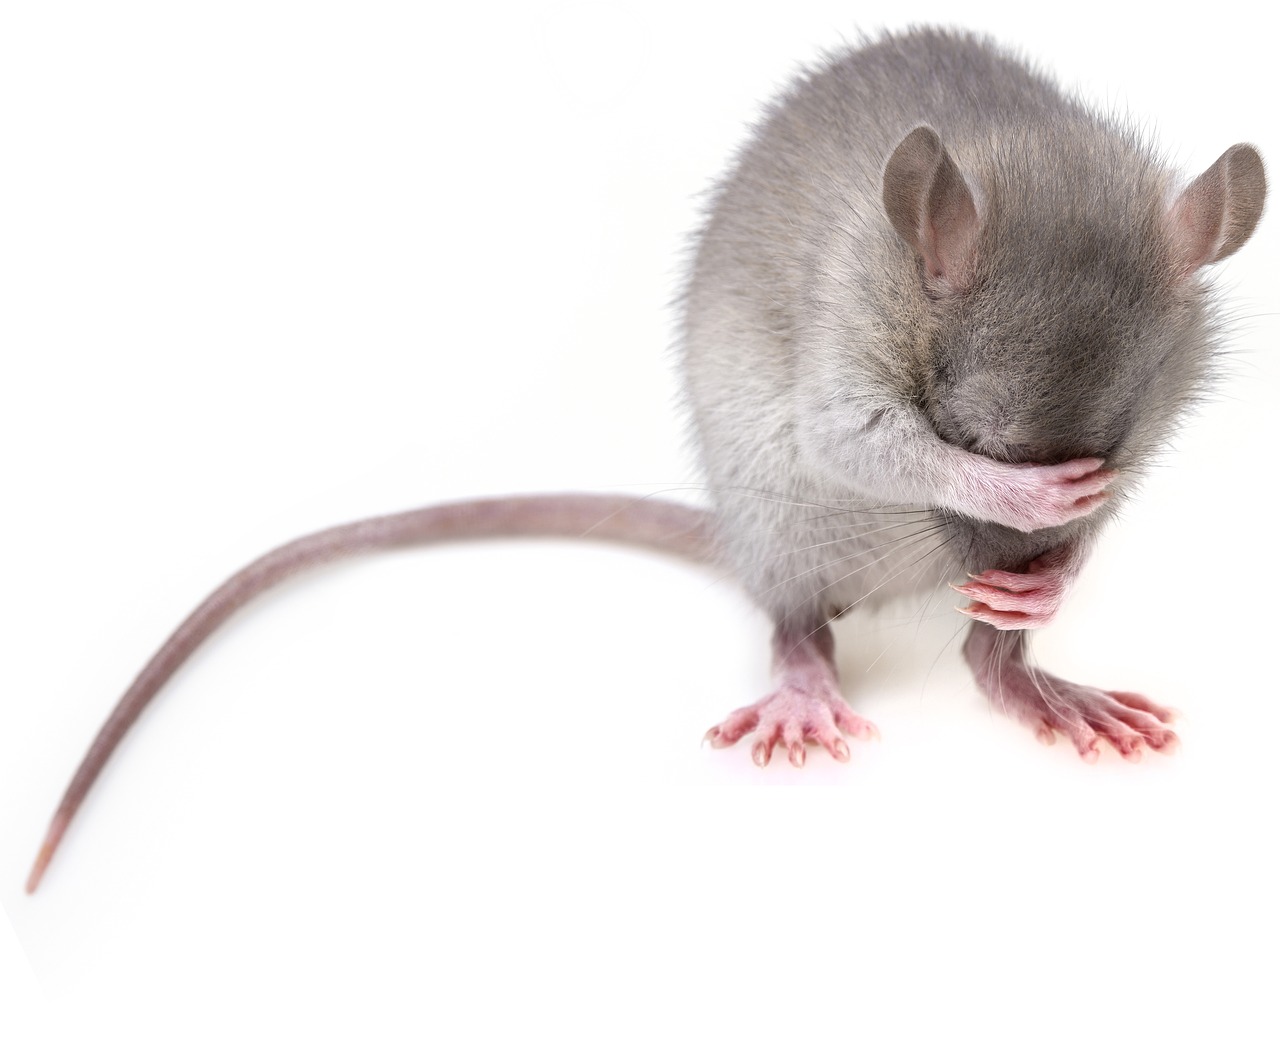 新発見の神経スイッチによってマウスが冬眠状態に